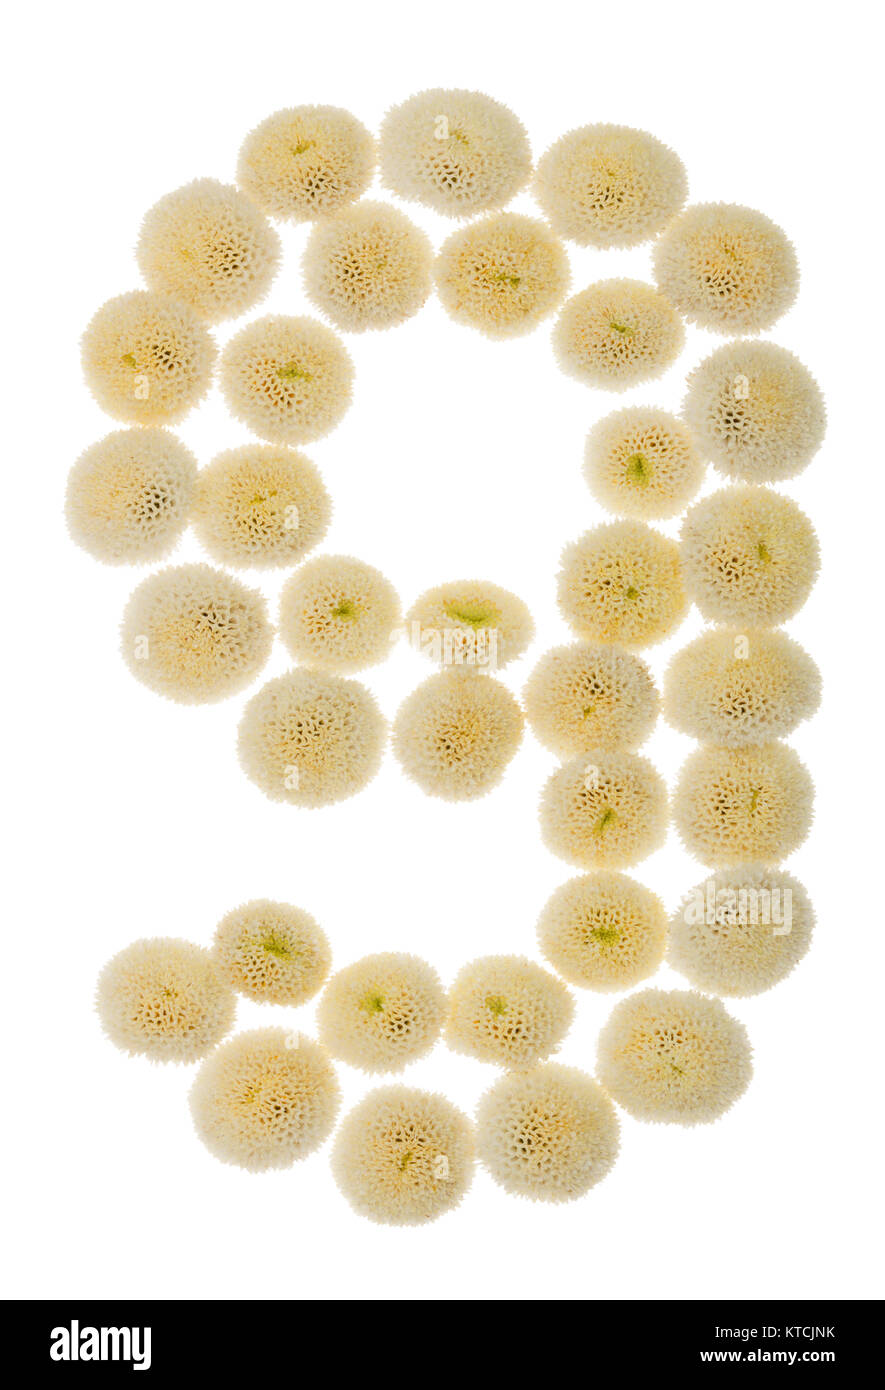 Chiffre arabe 9, neuf, à partir de crème fleurs de chrysanthème, isolé sur fond blanc Banque D'Images